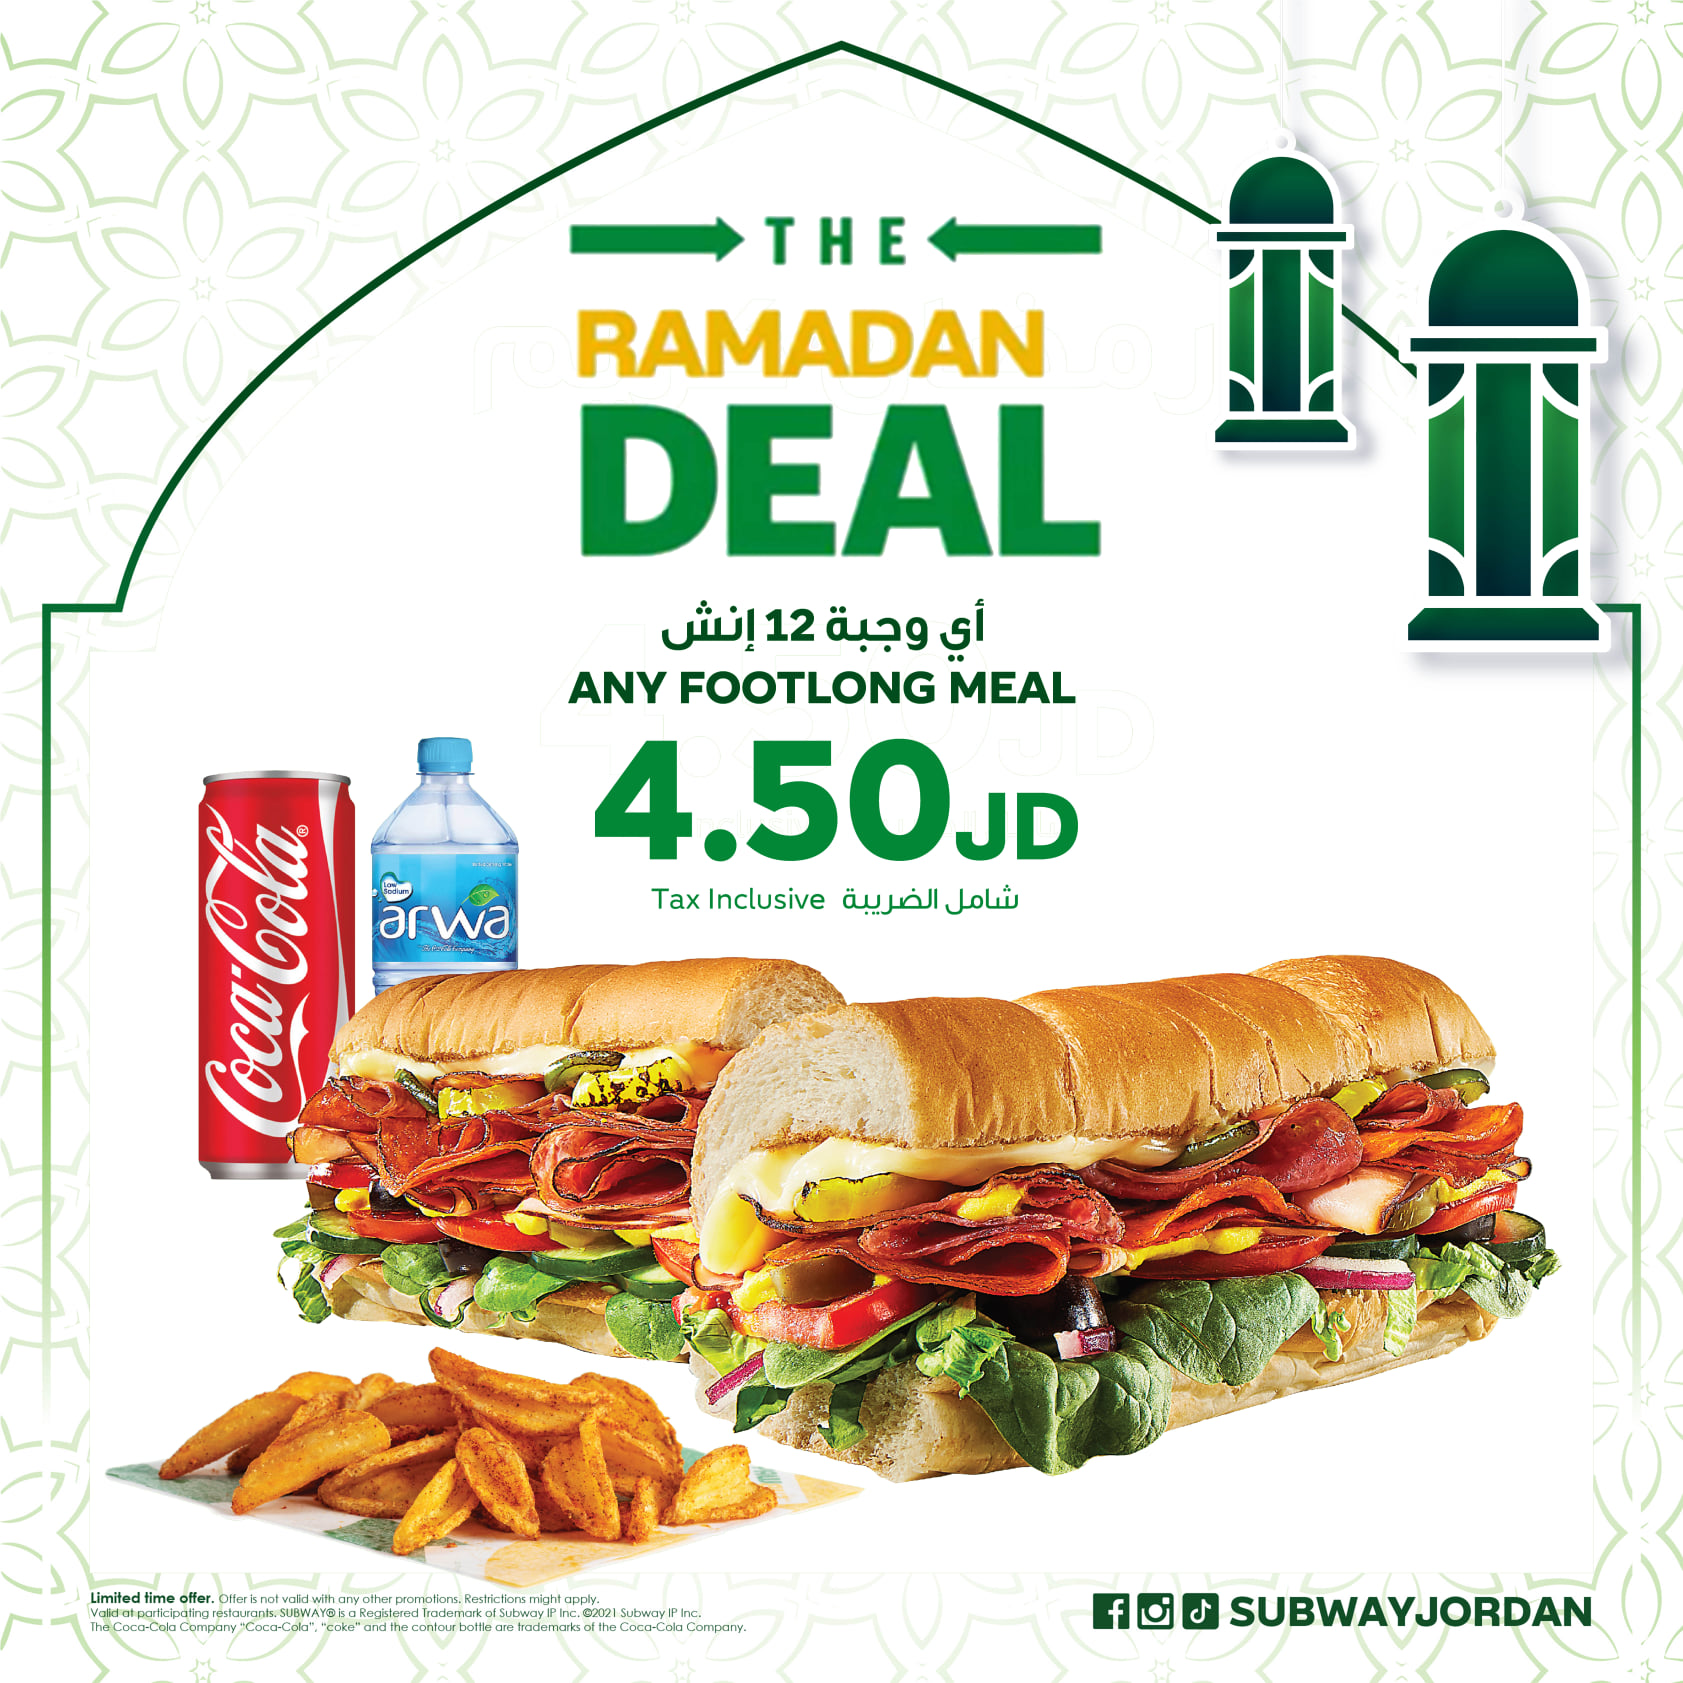 عروض صب واي الاردن - Subway Jordan Ramadan Offers 